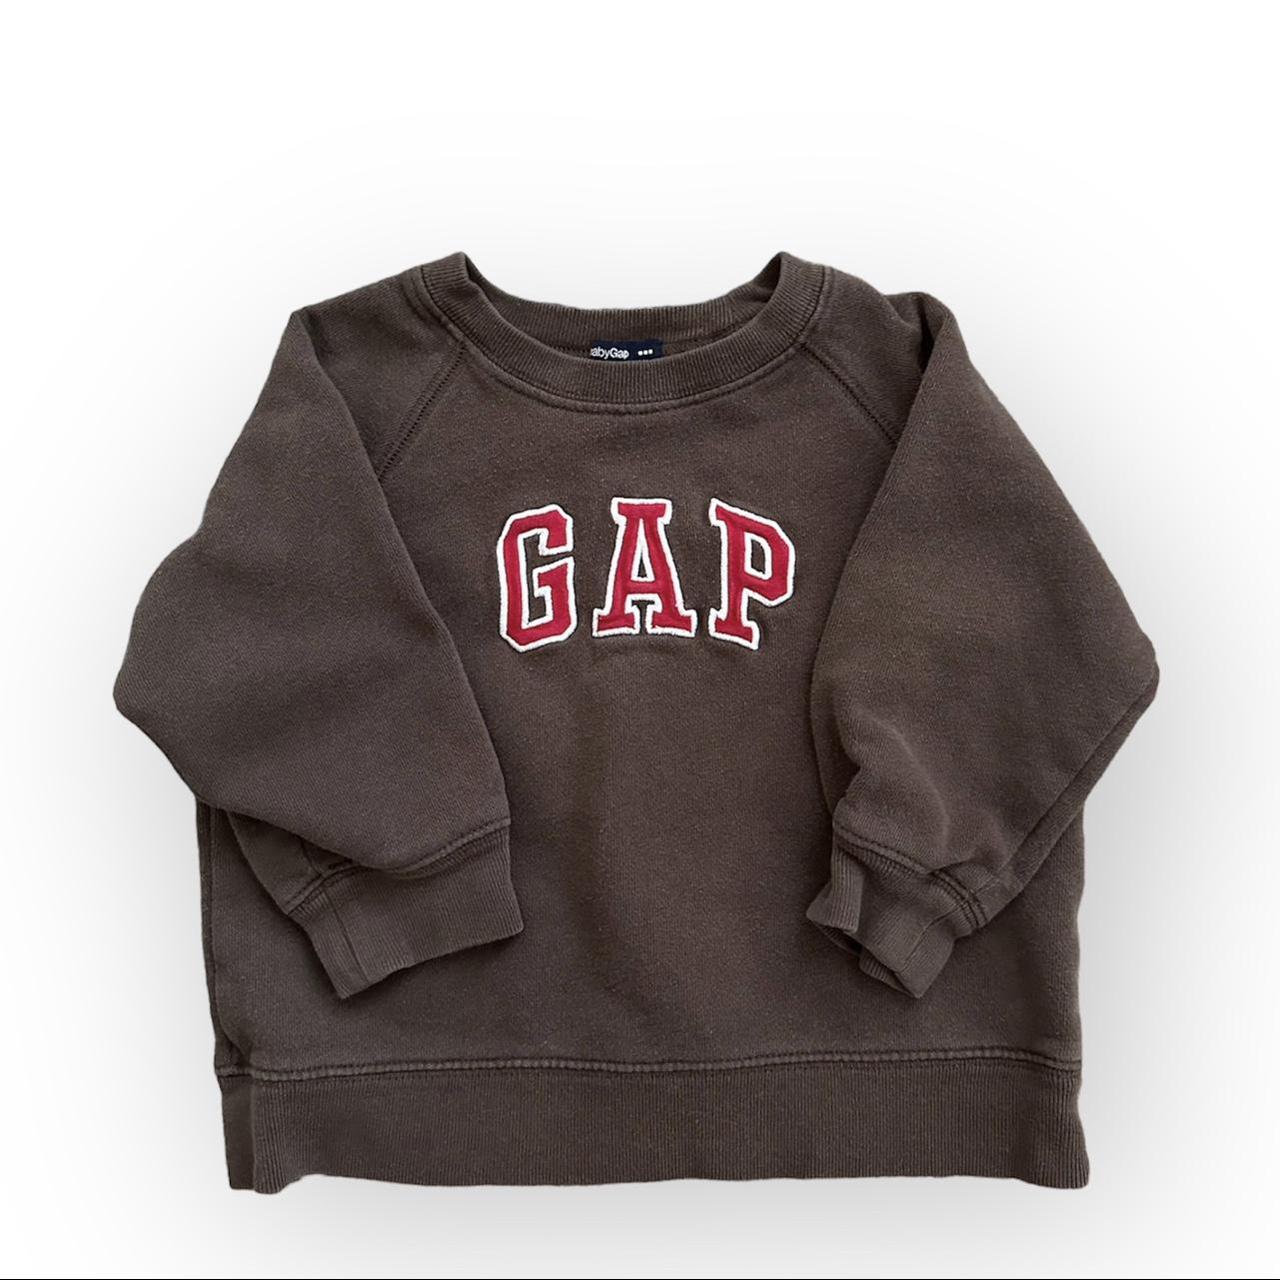 Gap Brown and Red Sweatshirt | Depop